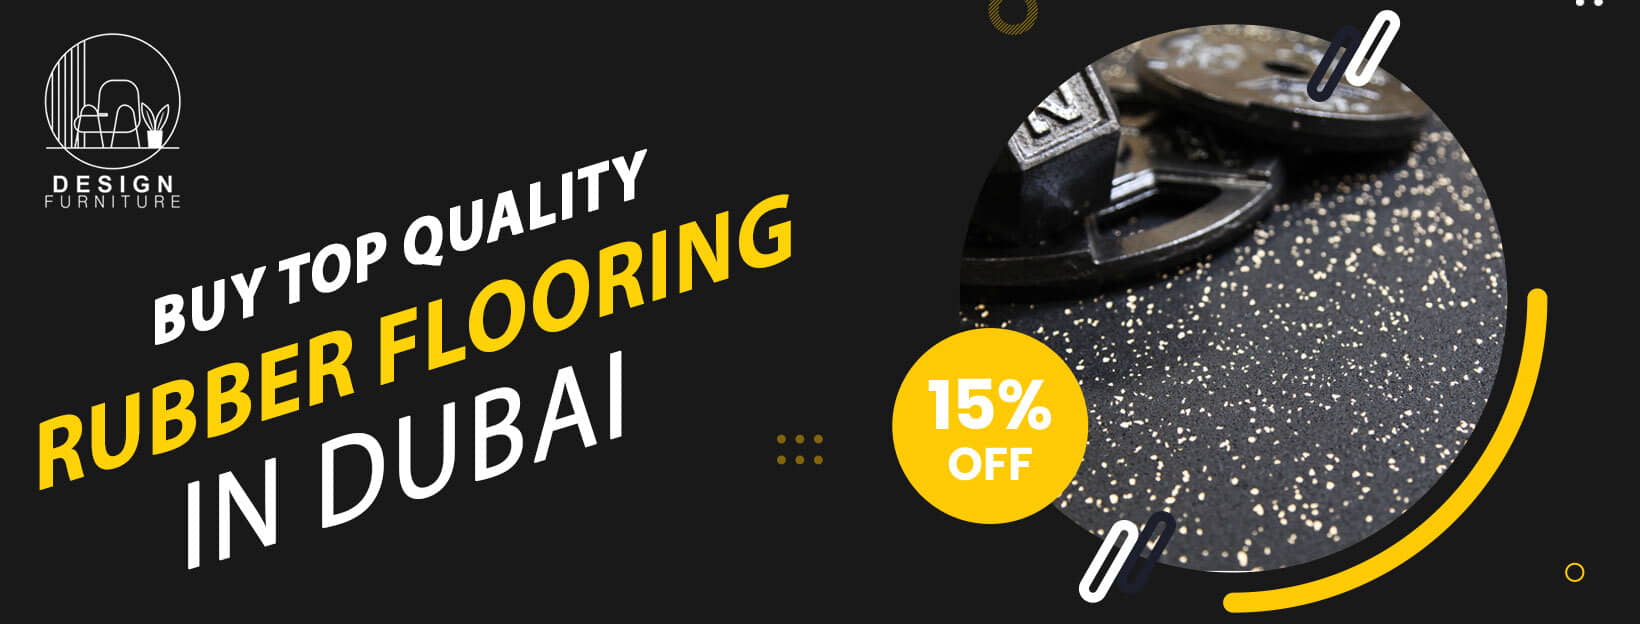 Rubber Flooring Dubai banner image